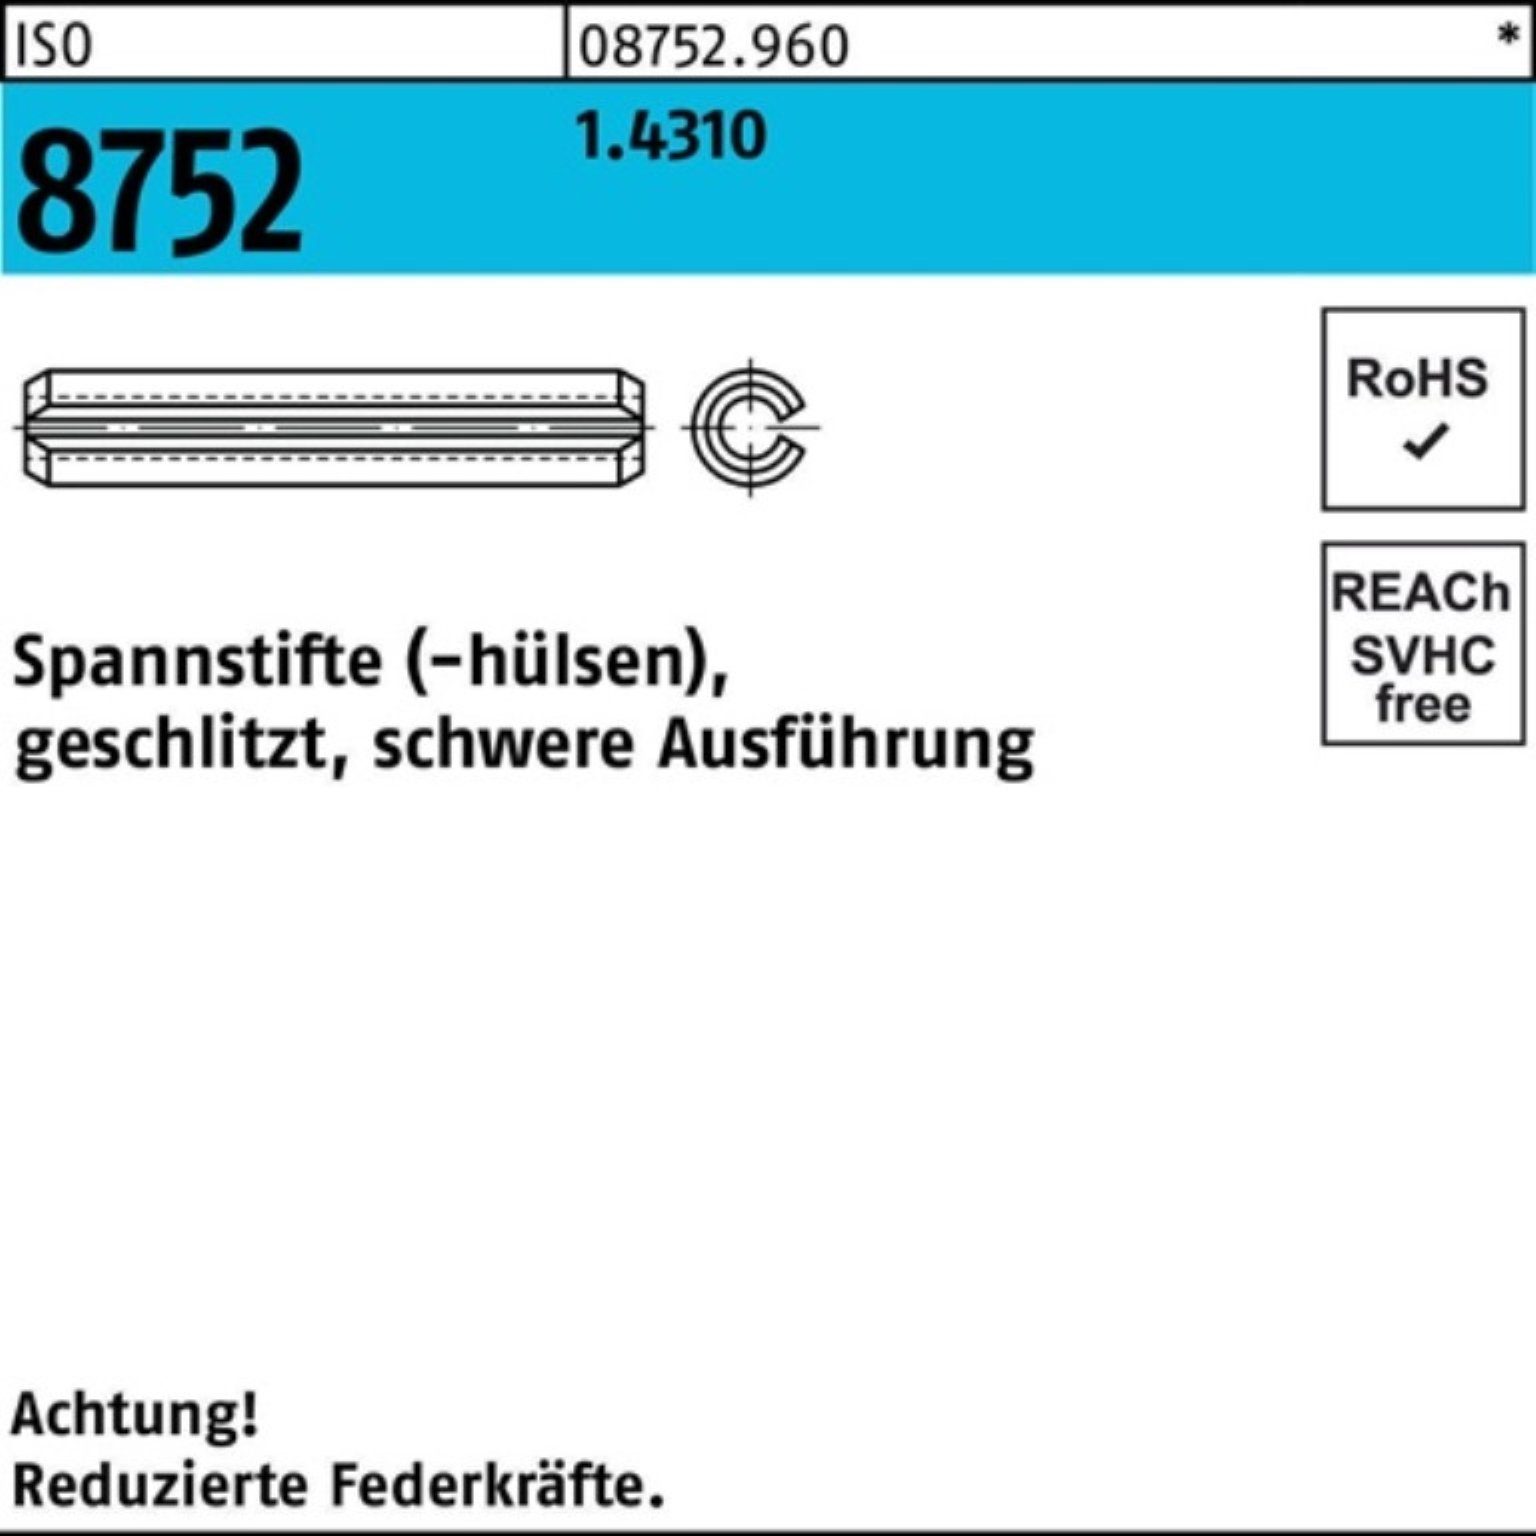 Reyher Spannstift Spannstift 4x 8752 22 schwere ISO Ausf. geschlitzt 100er 1.4310 5 Pack